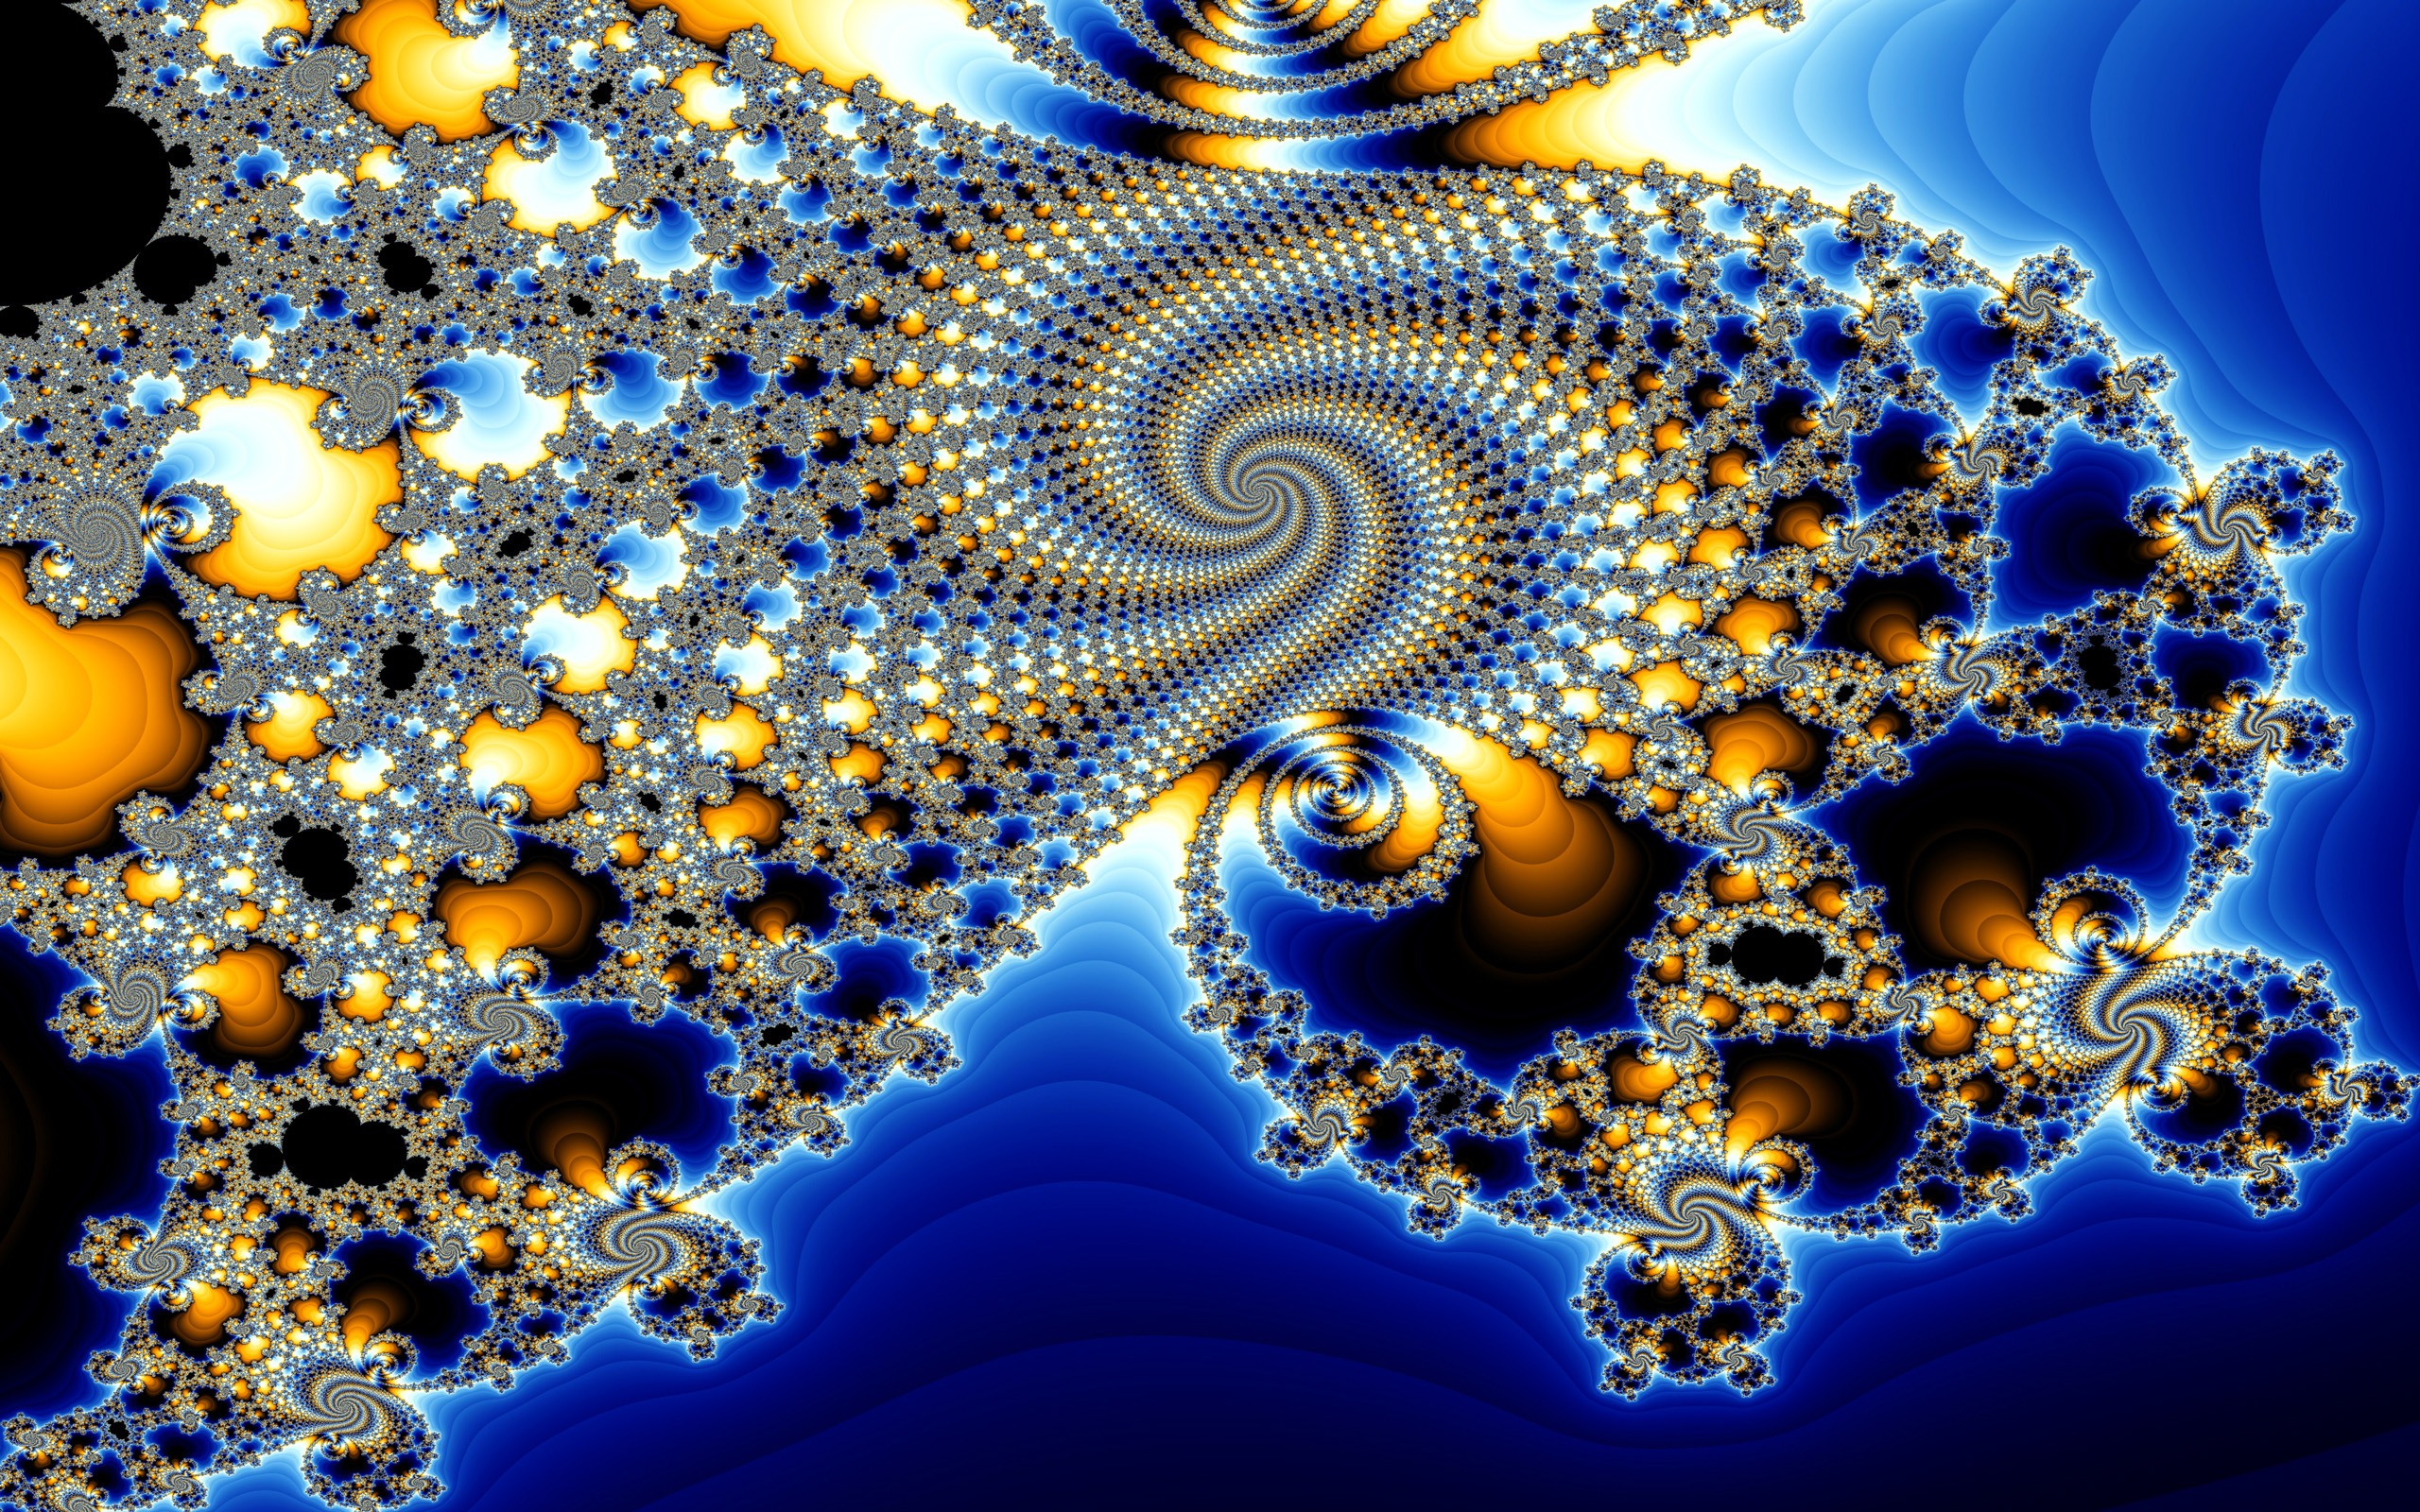 fractal wallpaper,fractal art,blue,art,organism,water